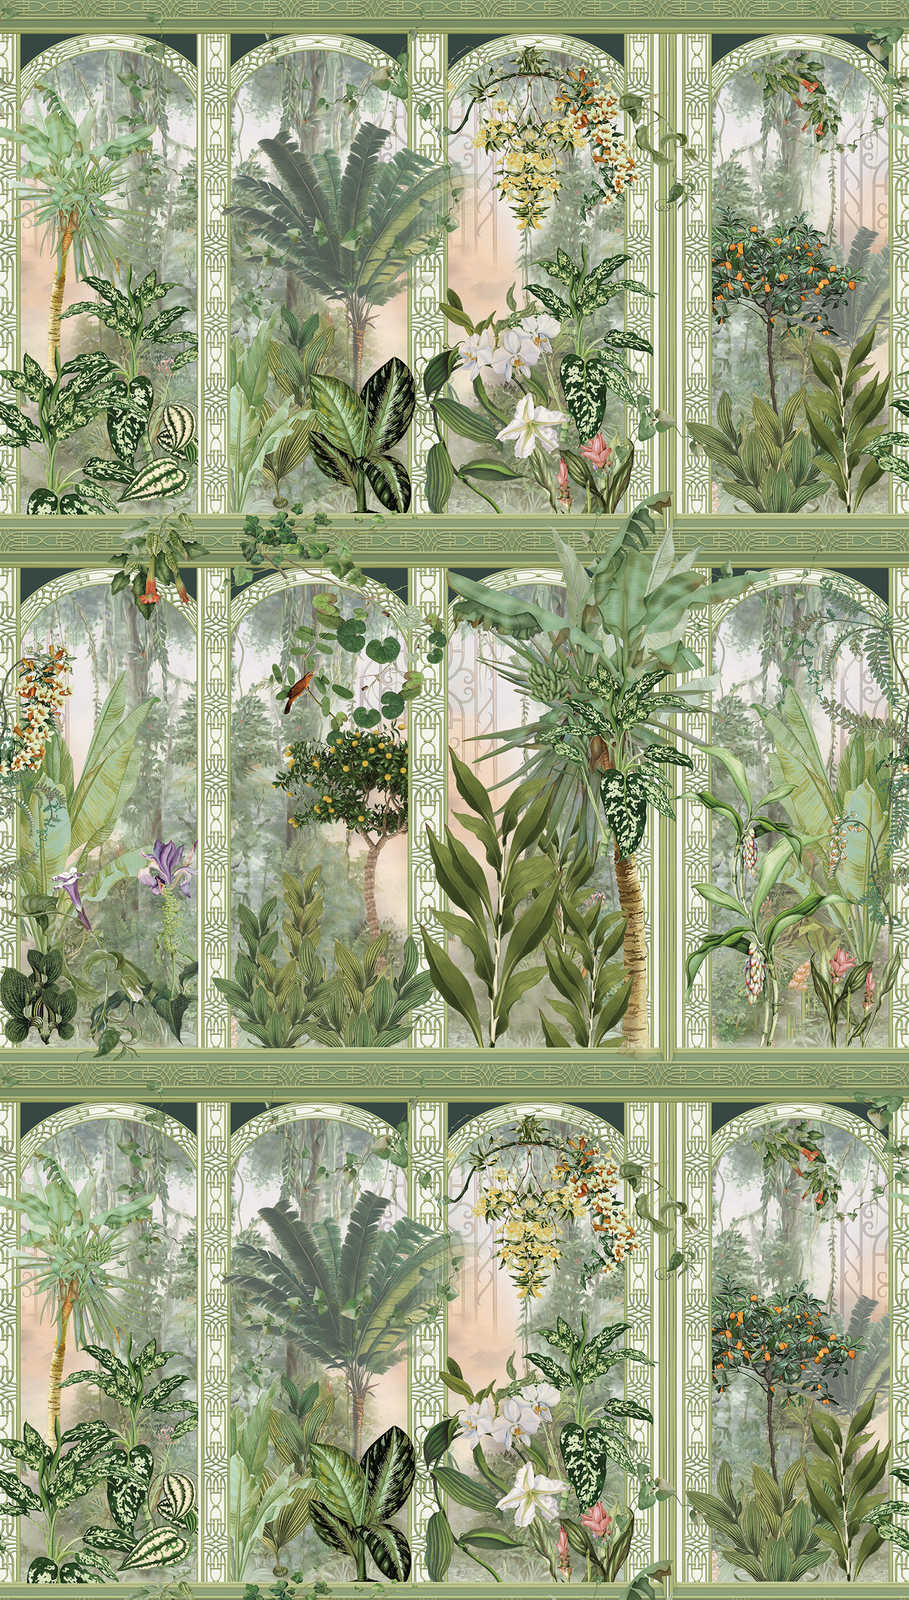             Tapete Dschungelmotiv mit großen Blättern und Blumen – Grün, Braun, Weiß
        